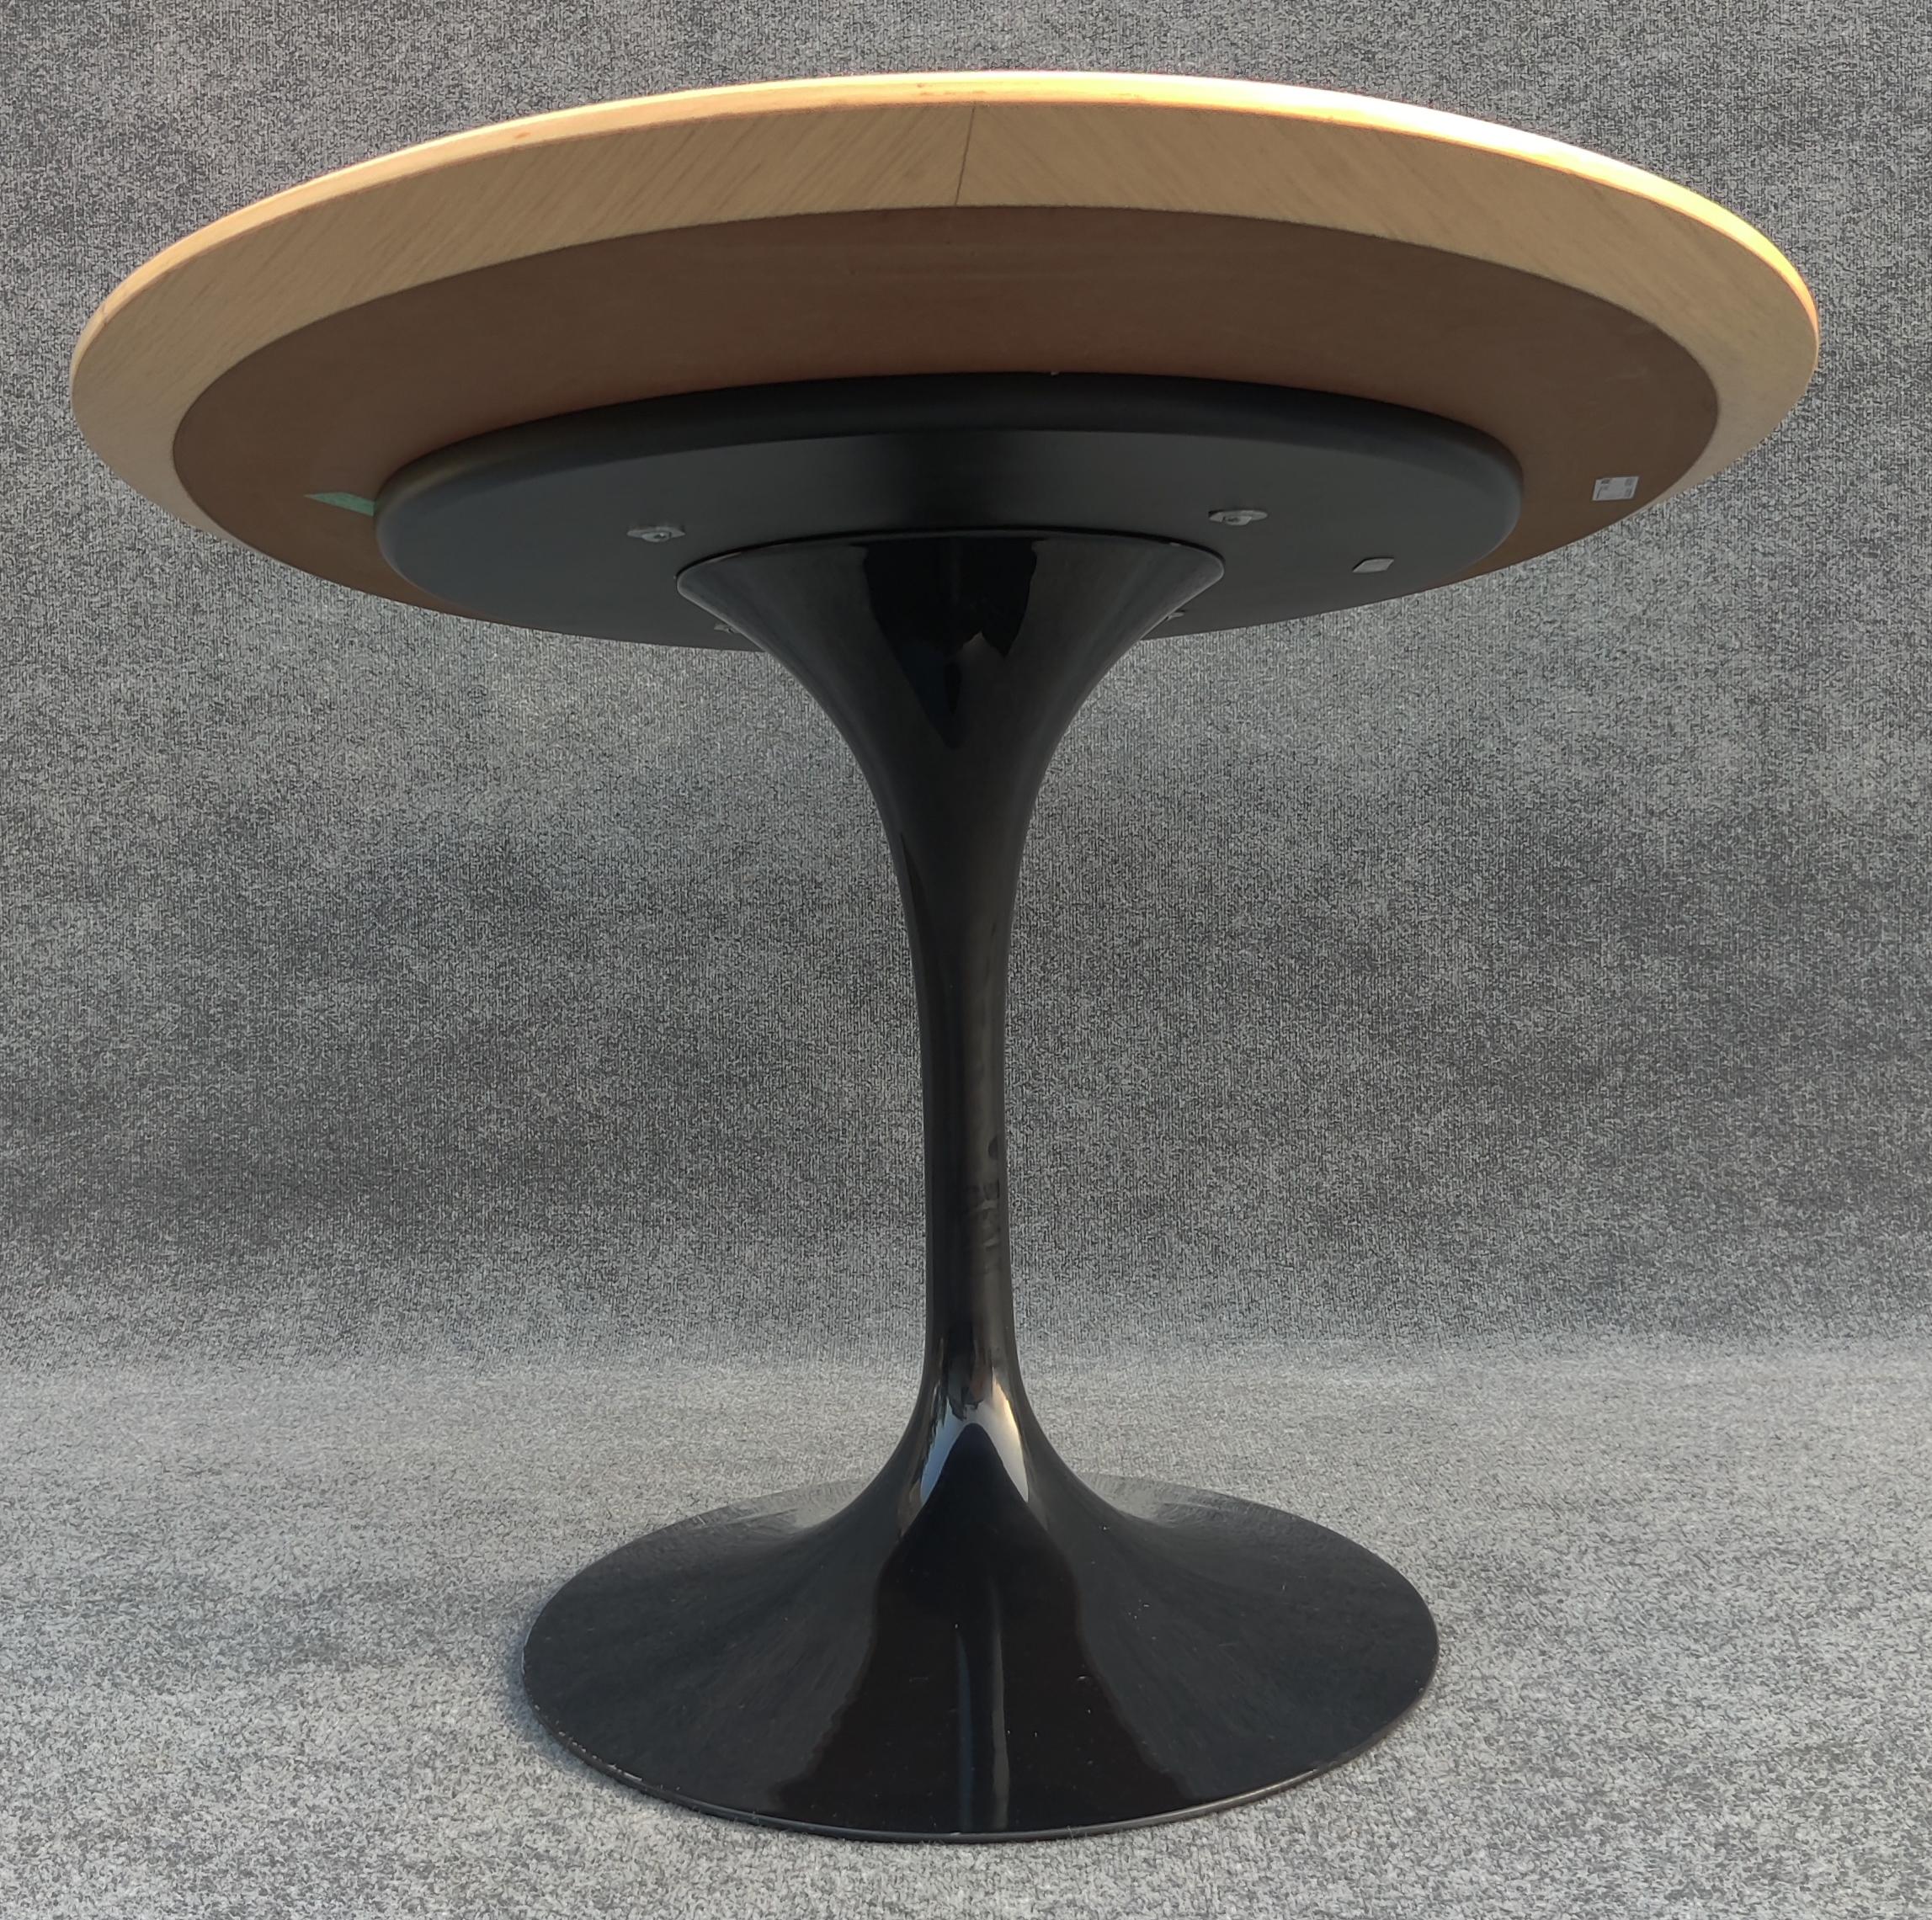 American Eero Saarinen Knoll Oval Tulip Dining Table 66x38